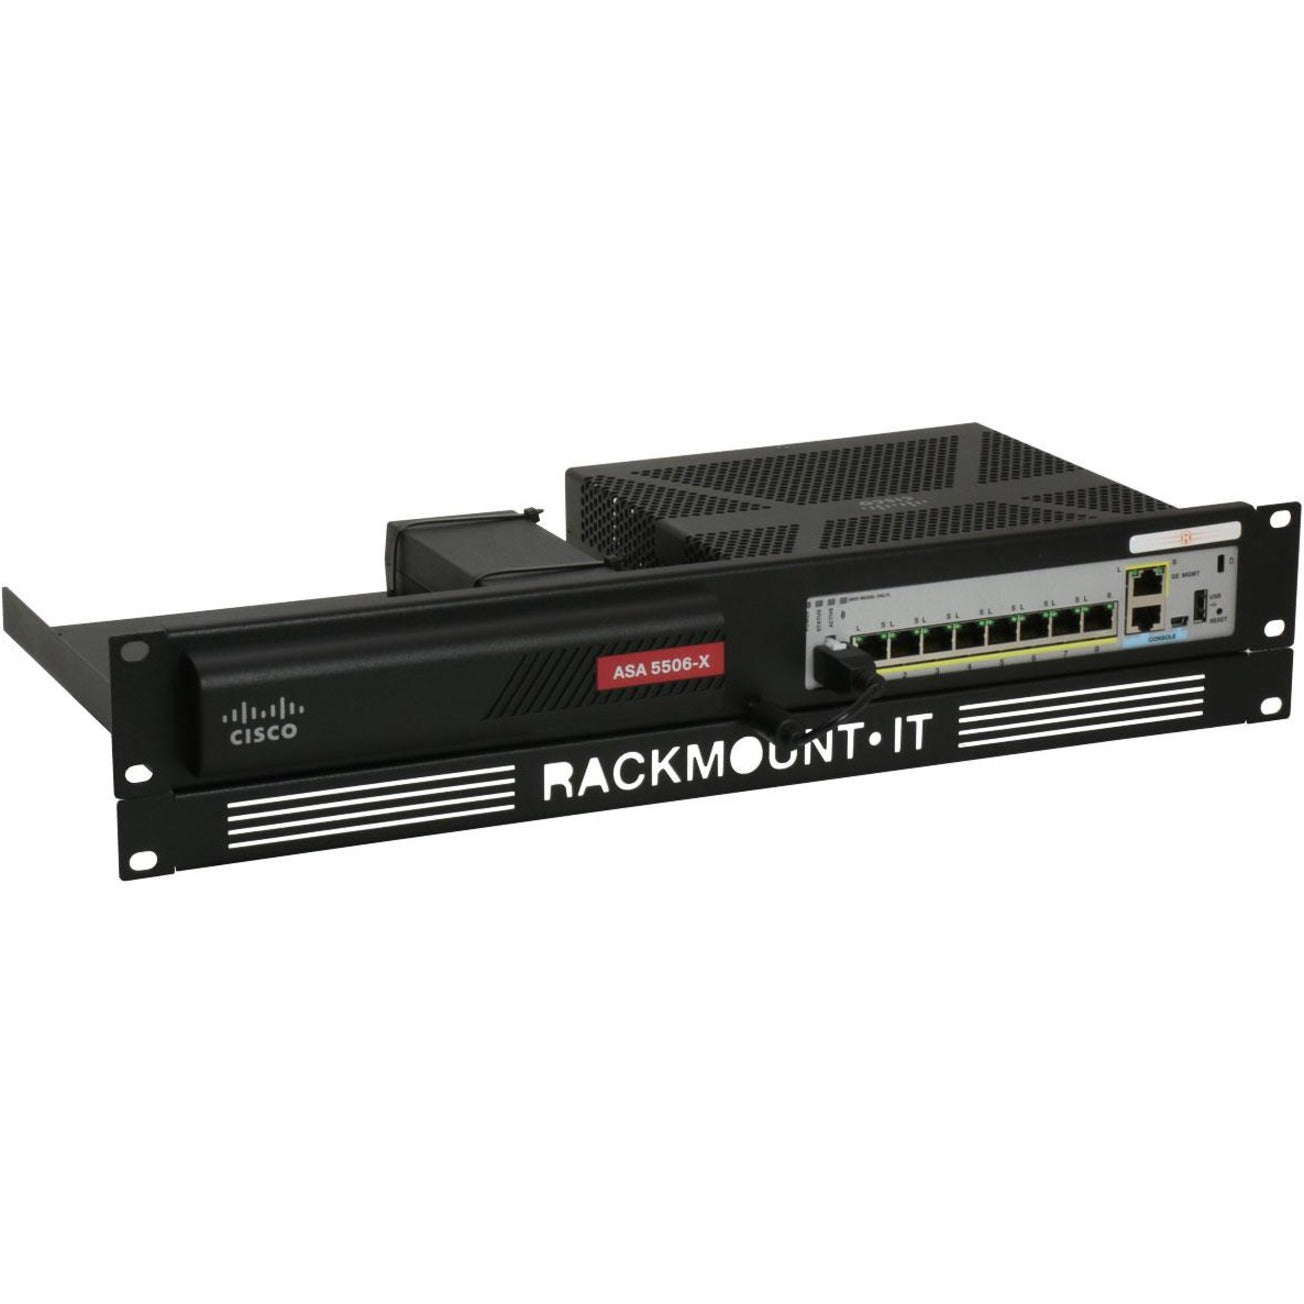 RACKMOUNT.IT RM-CI-T8 Montaje en Rack Cisrack Compatible con Cisco ASA 5506-X y Firepower 1010 Marca: RACKMOUNT.IT Traducción de la marca: MONTAJEENRACK.IT